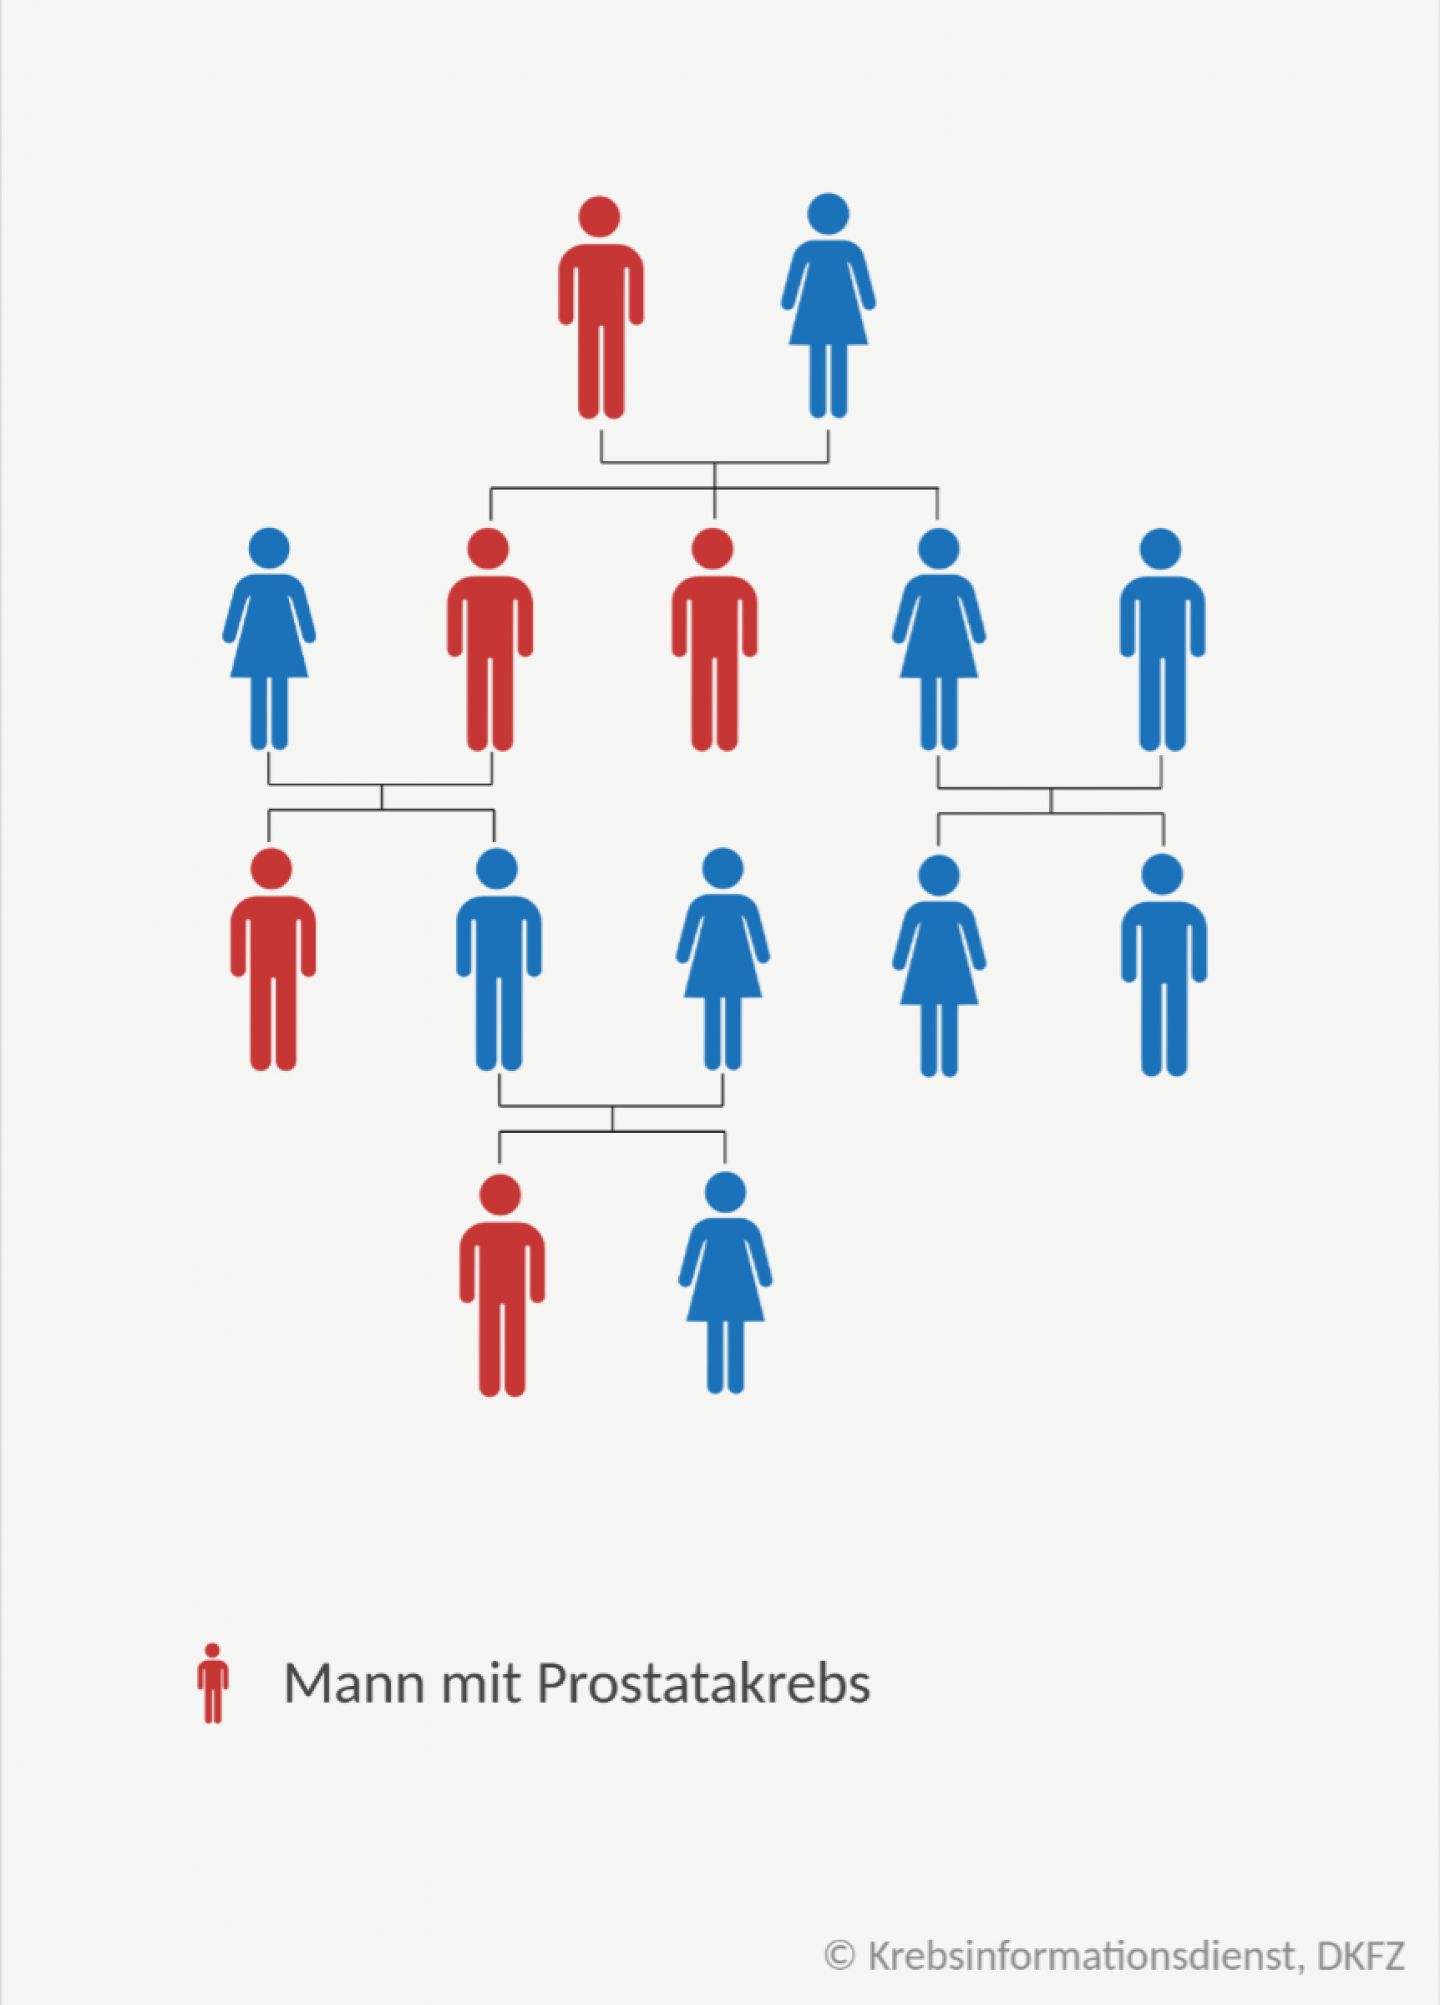 Stammbaum einer Familie mit erblichen Prostatakrebs: Es gibt Väter und Brüder die erkrankt sind und solche die gesund geblieben sind.